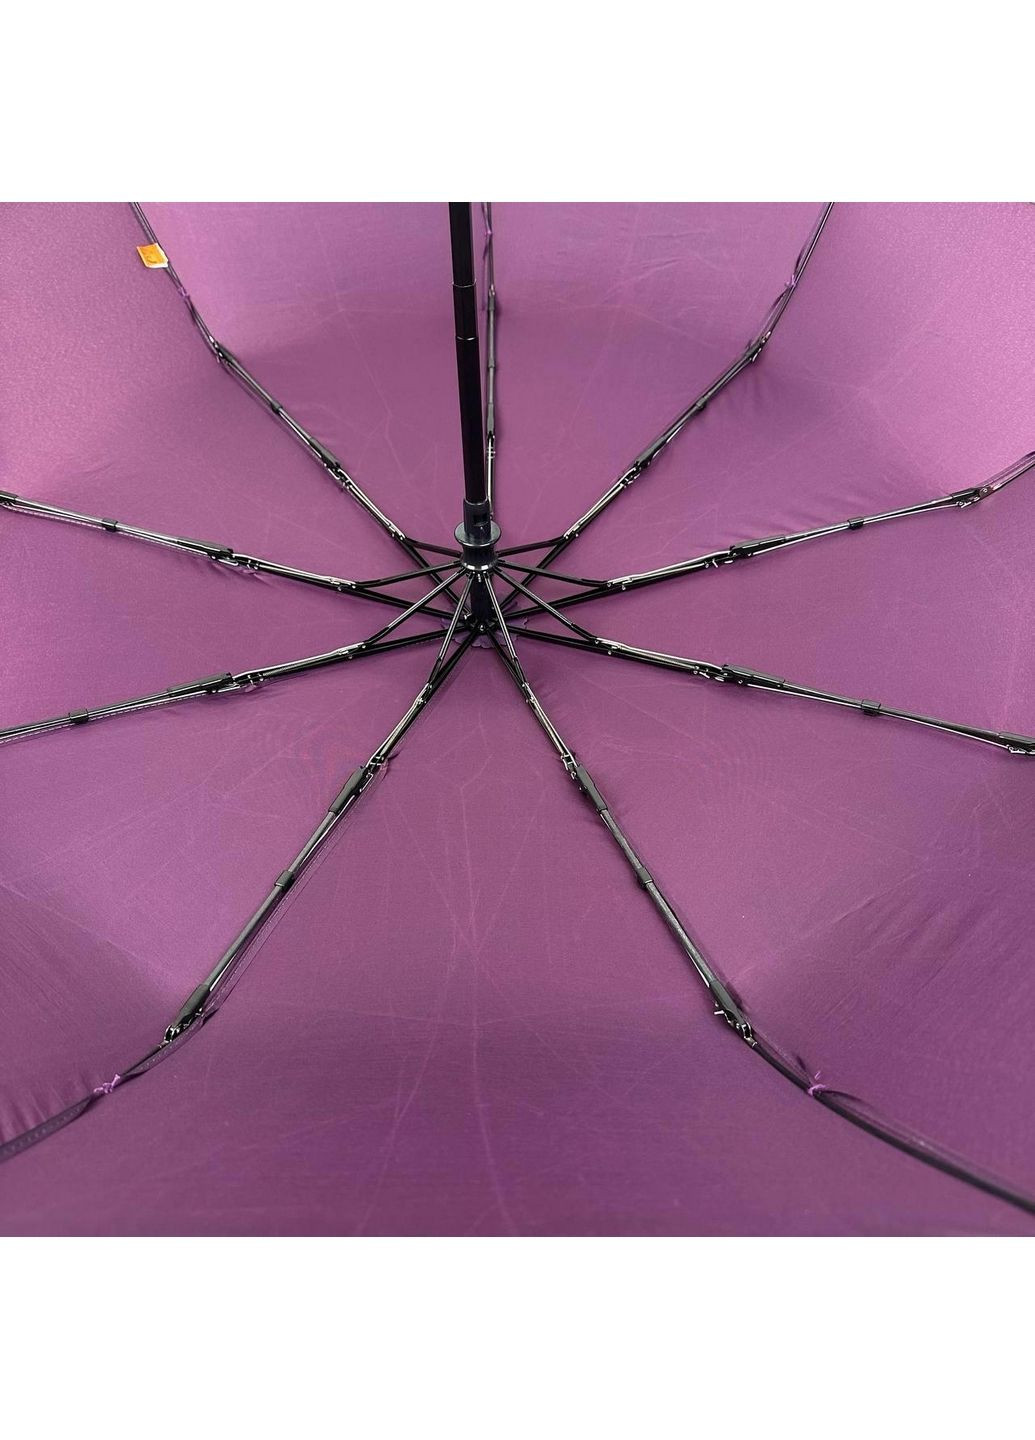 Складной женский зонт автомат Frei Regen (279318172)